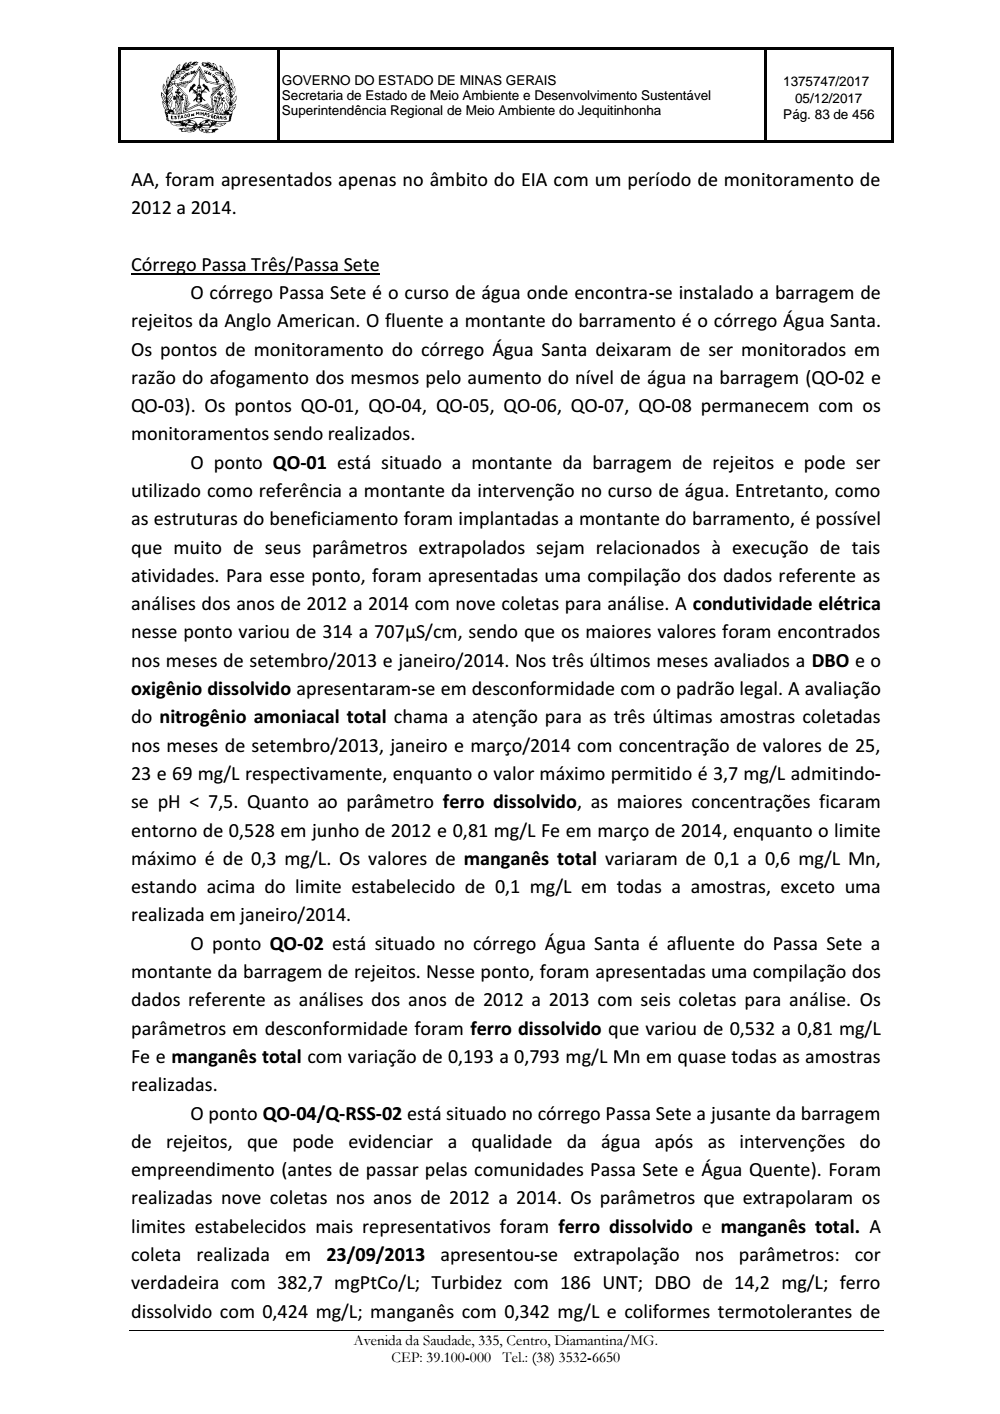 Page 83 from Parecer único da Secretaria de estado de Meio Ambiente e Desenvolvimento Sustentável (SEMAD)